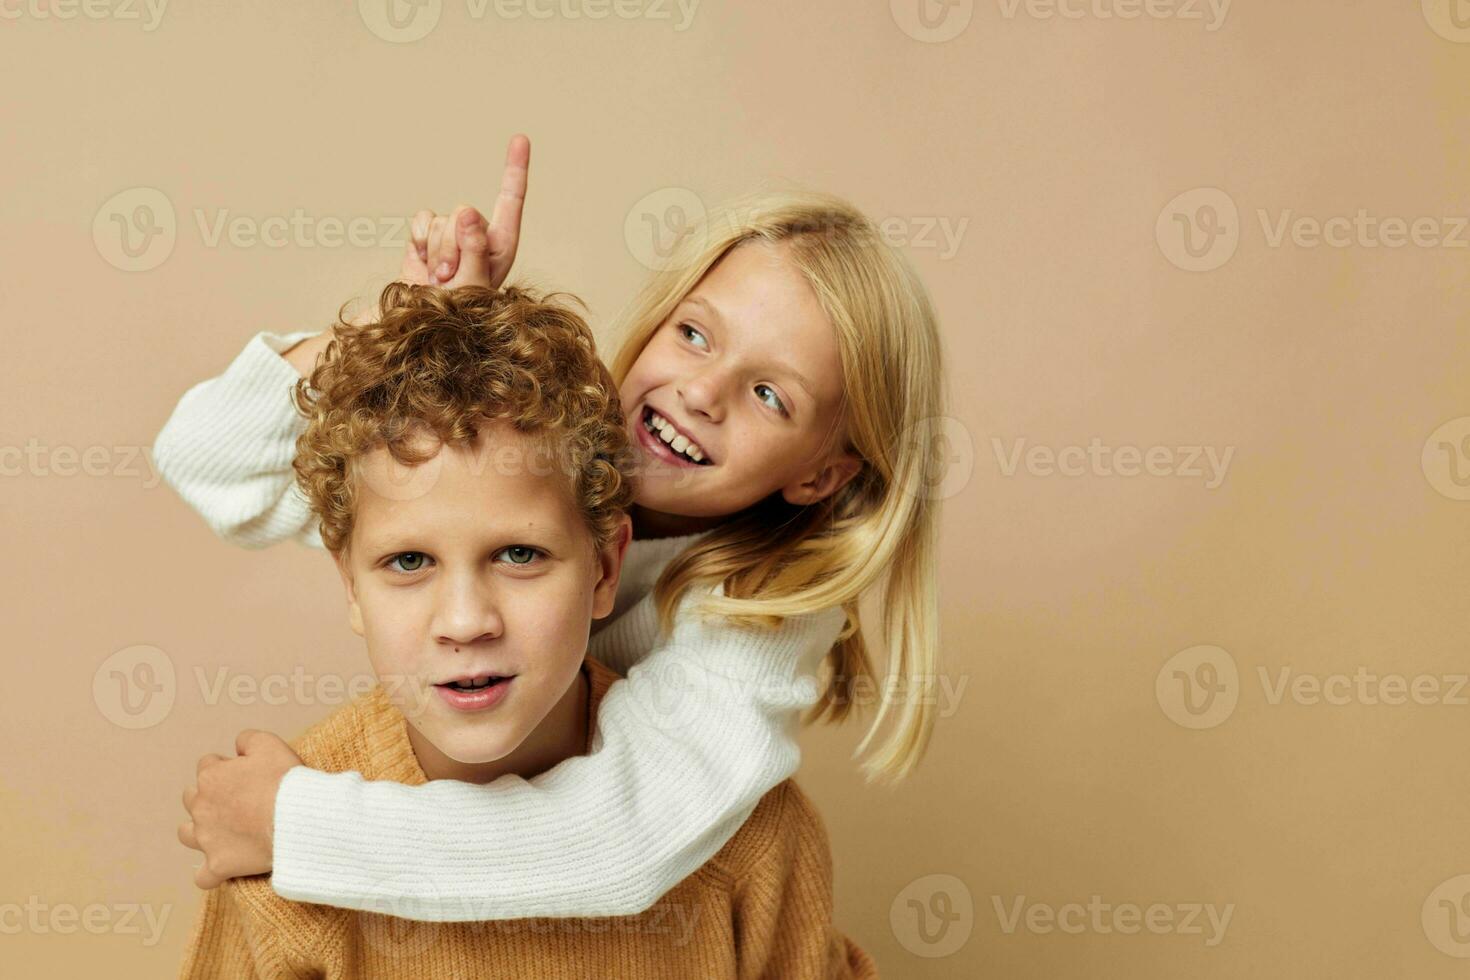 jongen en meisje staand De volgende naar poseren emoties levensstijl ongewijzigd foto